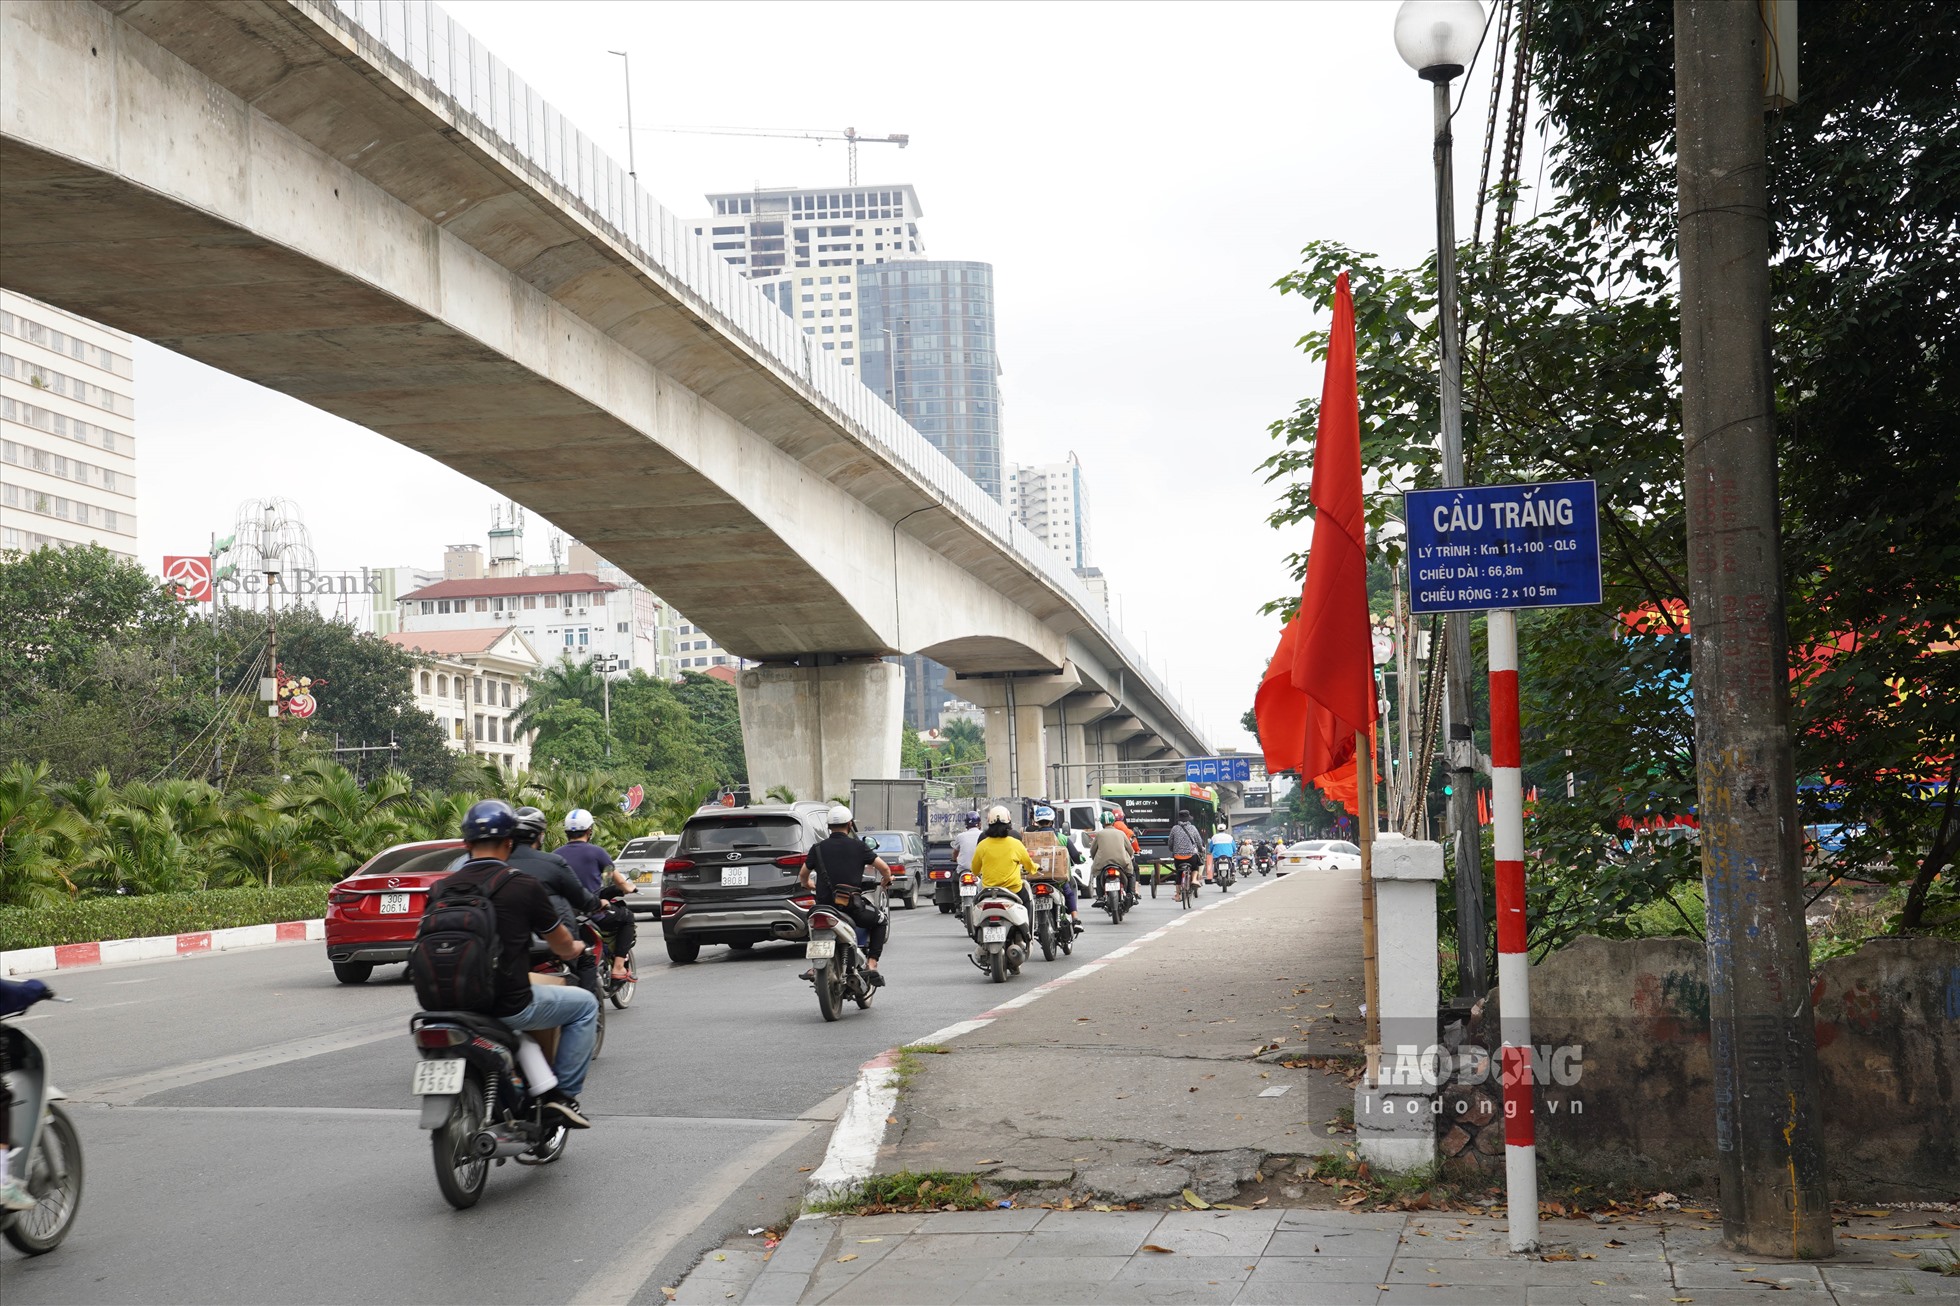 Theo Sở Giao thông Vận tải Hà Nội, đoạn từ Khuất Duy Tiến đến cầu Trắng (Hà Đông), nhà thầu chuẩn bị rào chắn thi công 14 hố ga chiều hướng về ngã tư cầu Trắng, chiều rộng lòng đường còn lại 10 - 12 m.